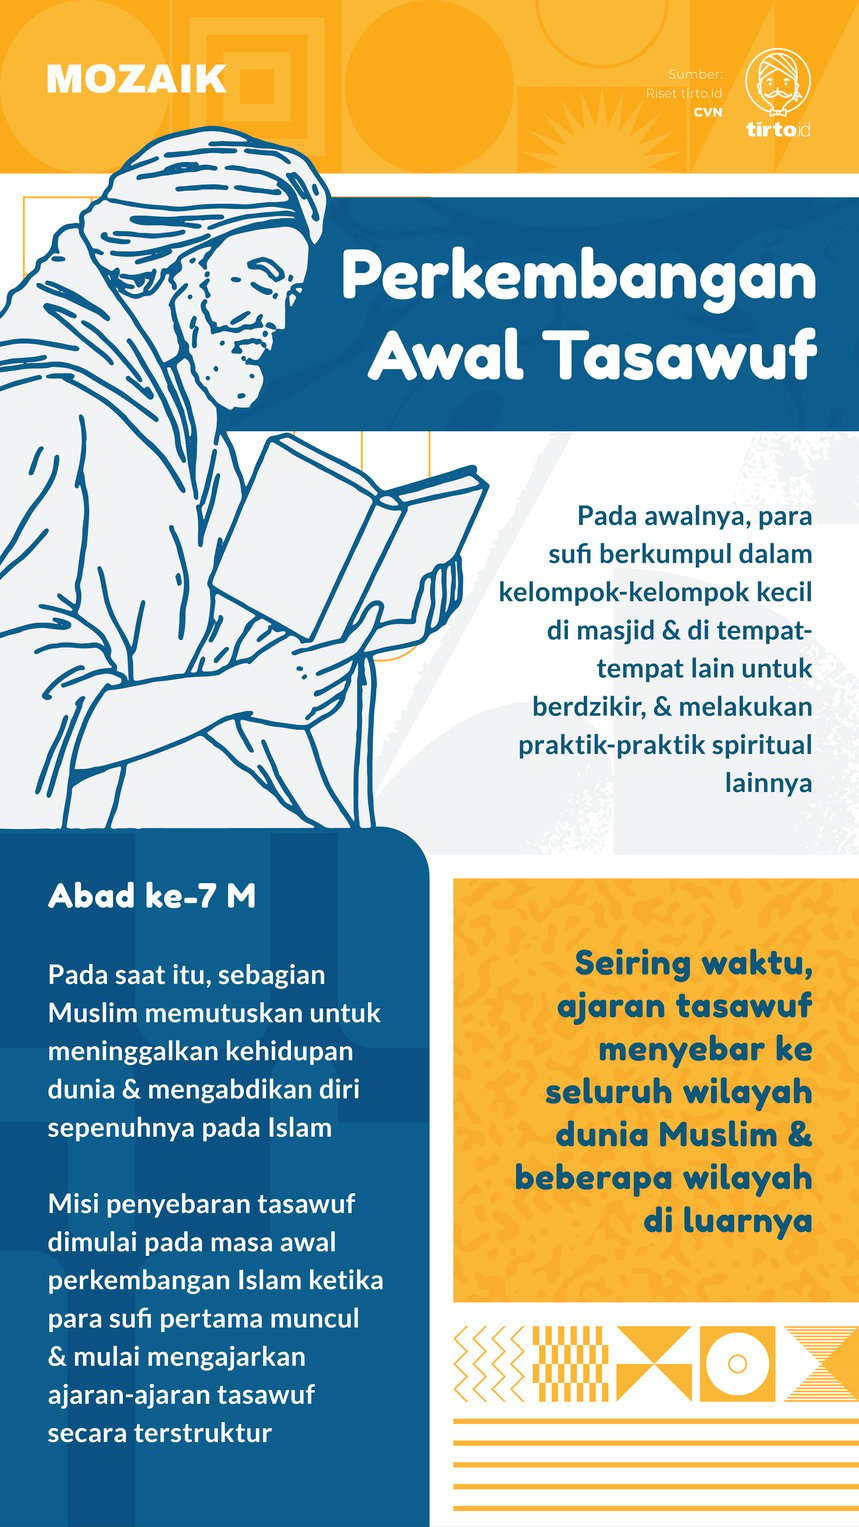 Infografik Mozaik Perkembangan Awal Tasawuf